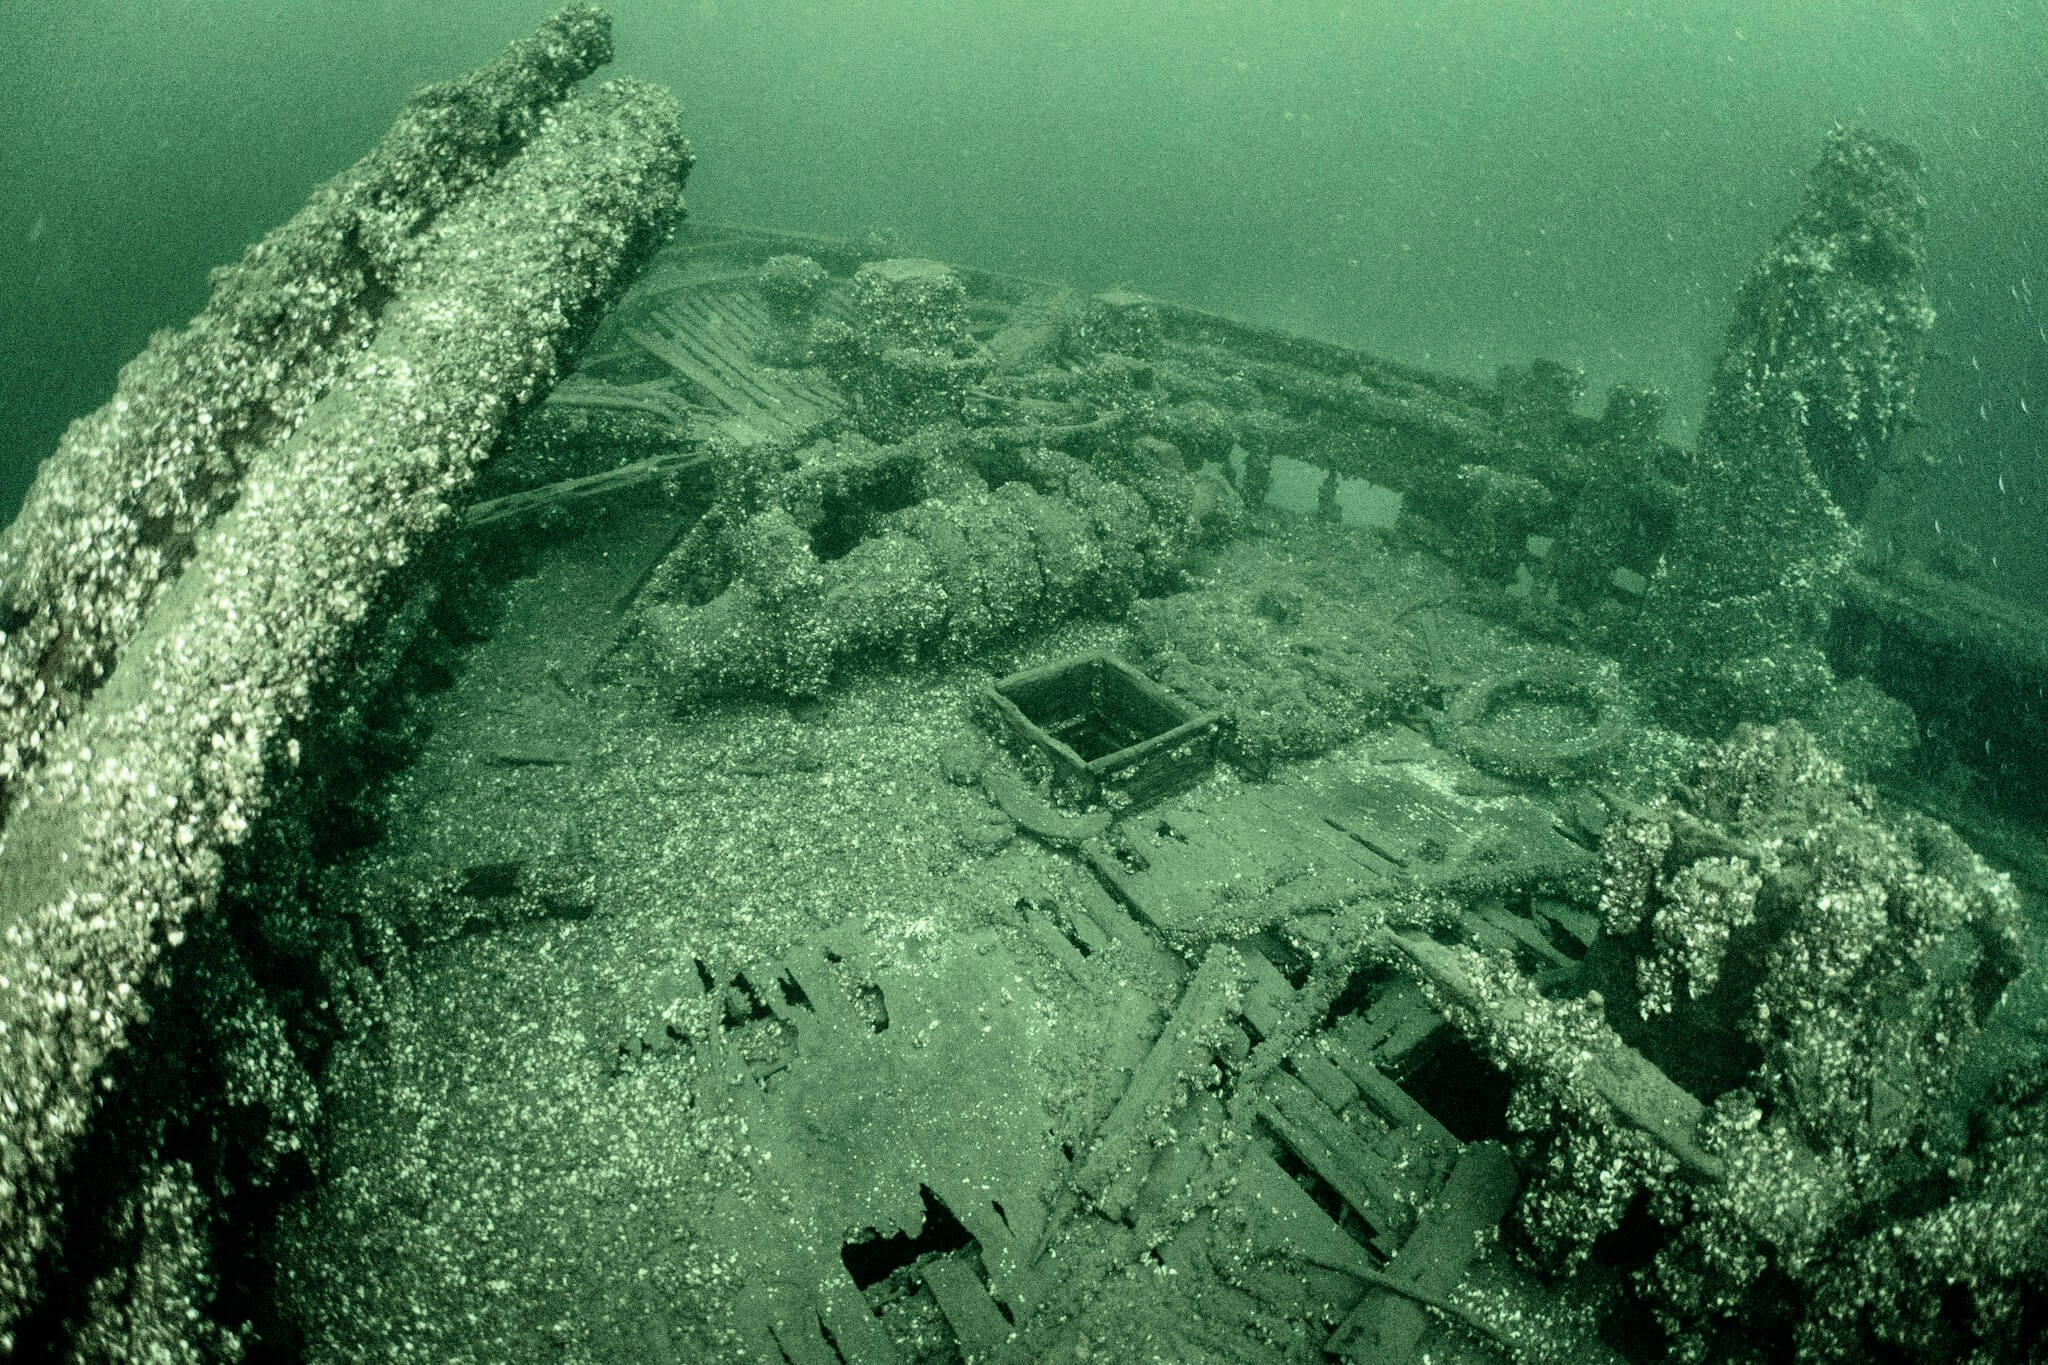 The City of Sheboygan shipwreck near Picton, Ontario